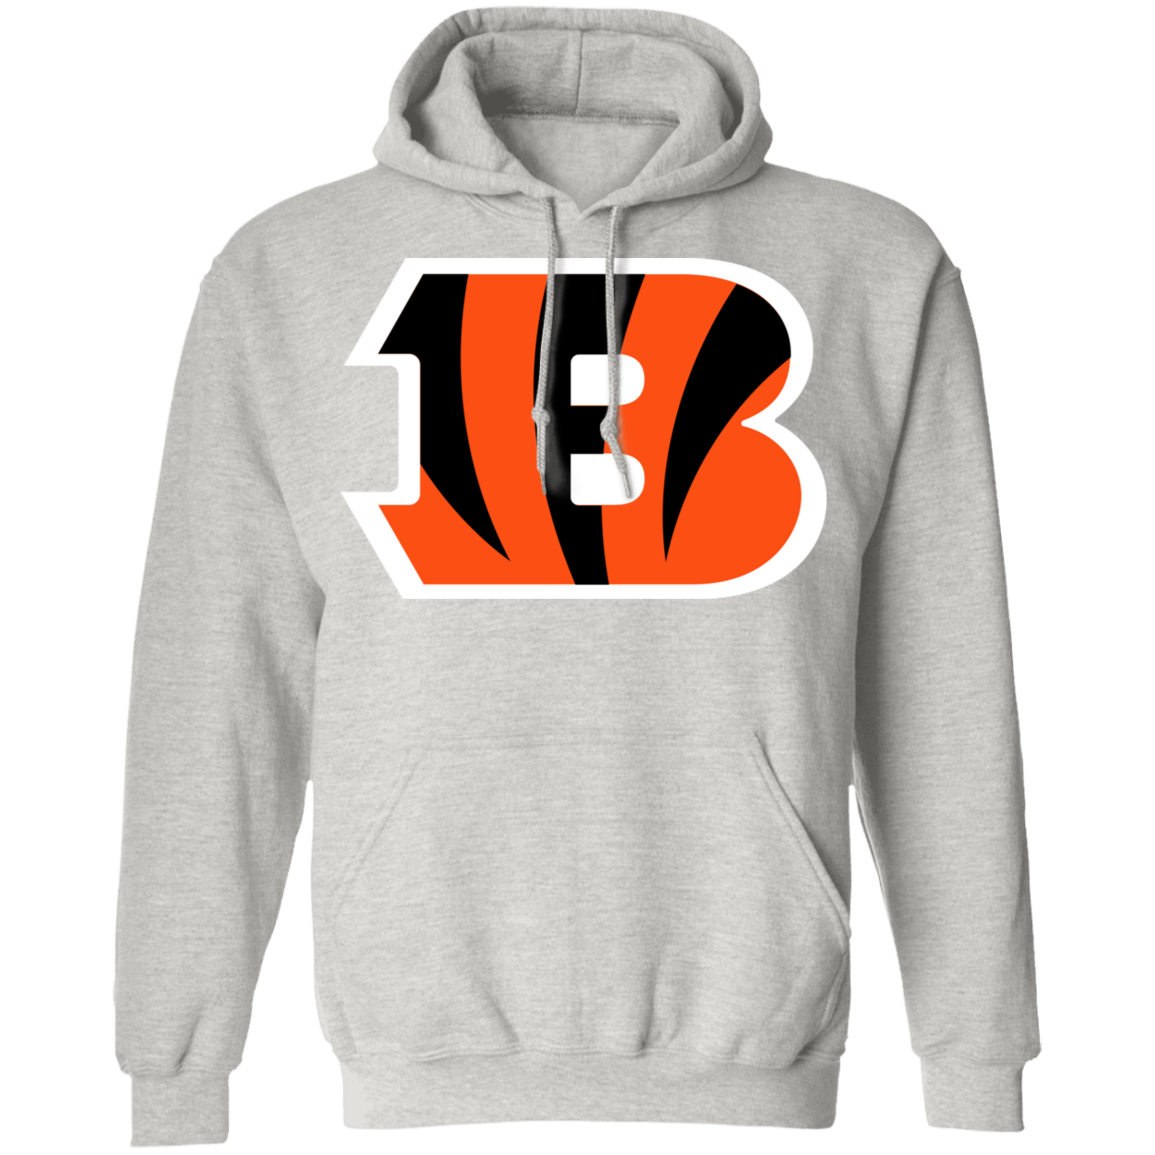 Cincinnati Bengals Big Logo Hooded Sweatshirt